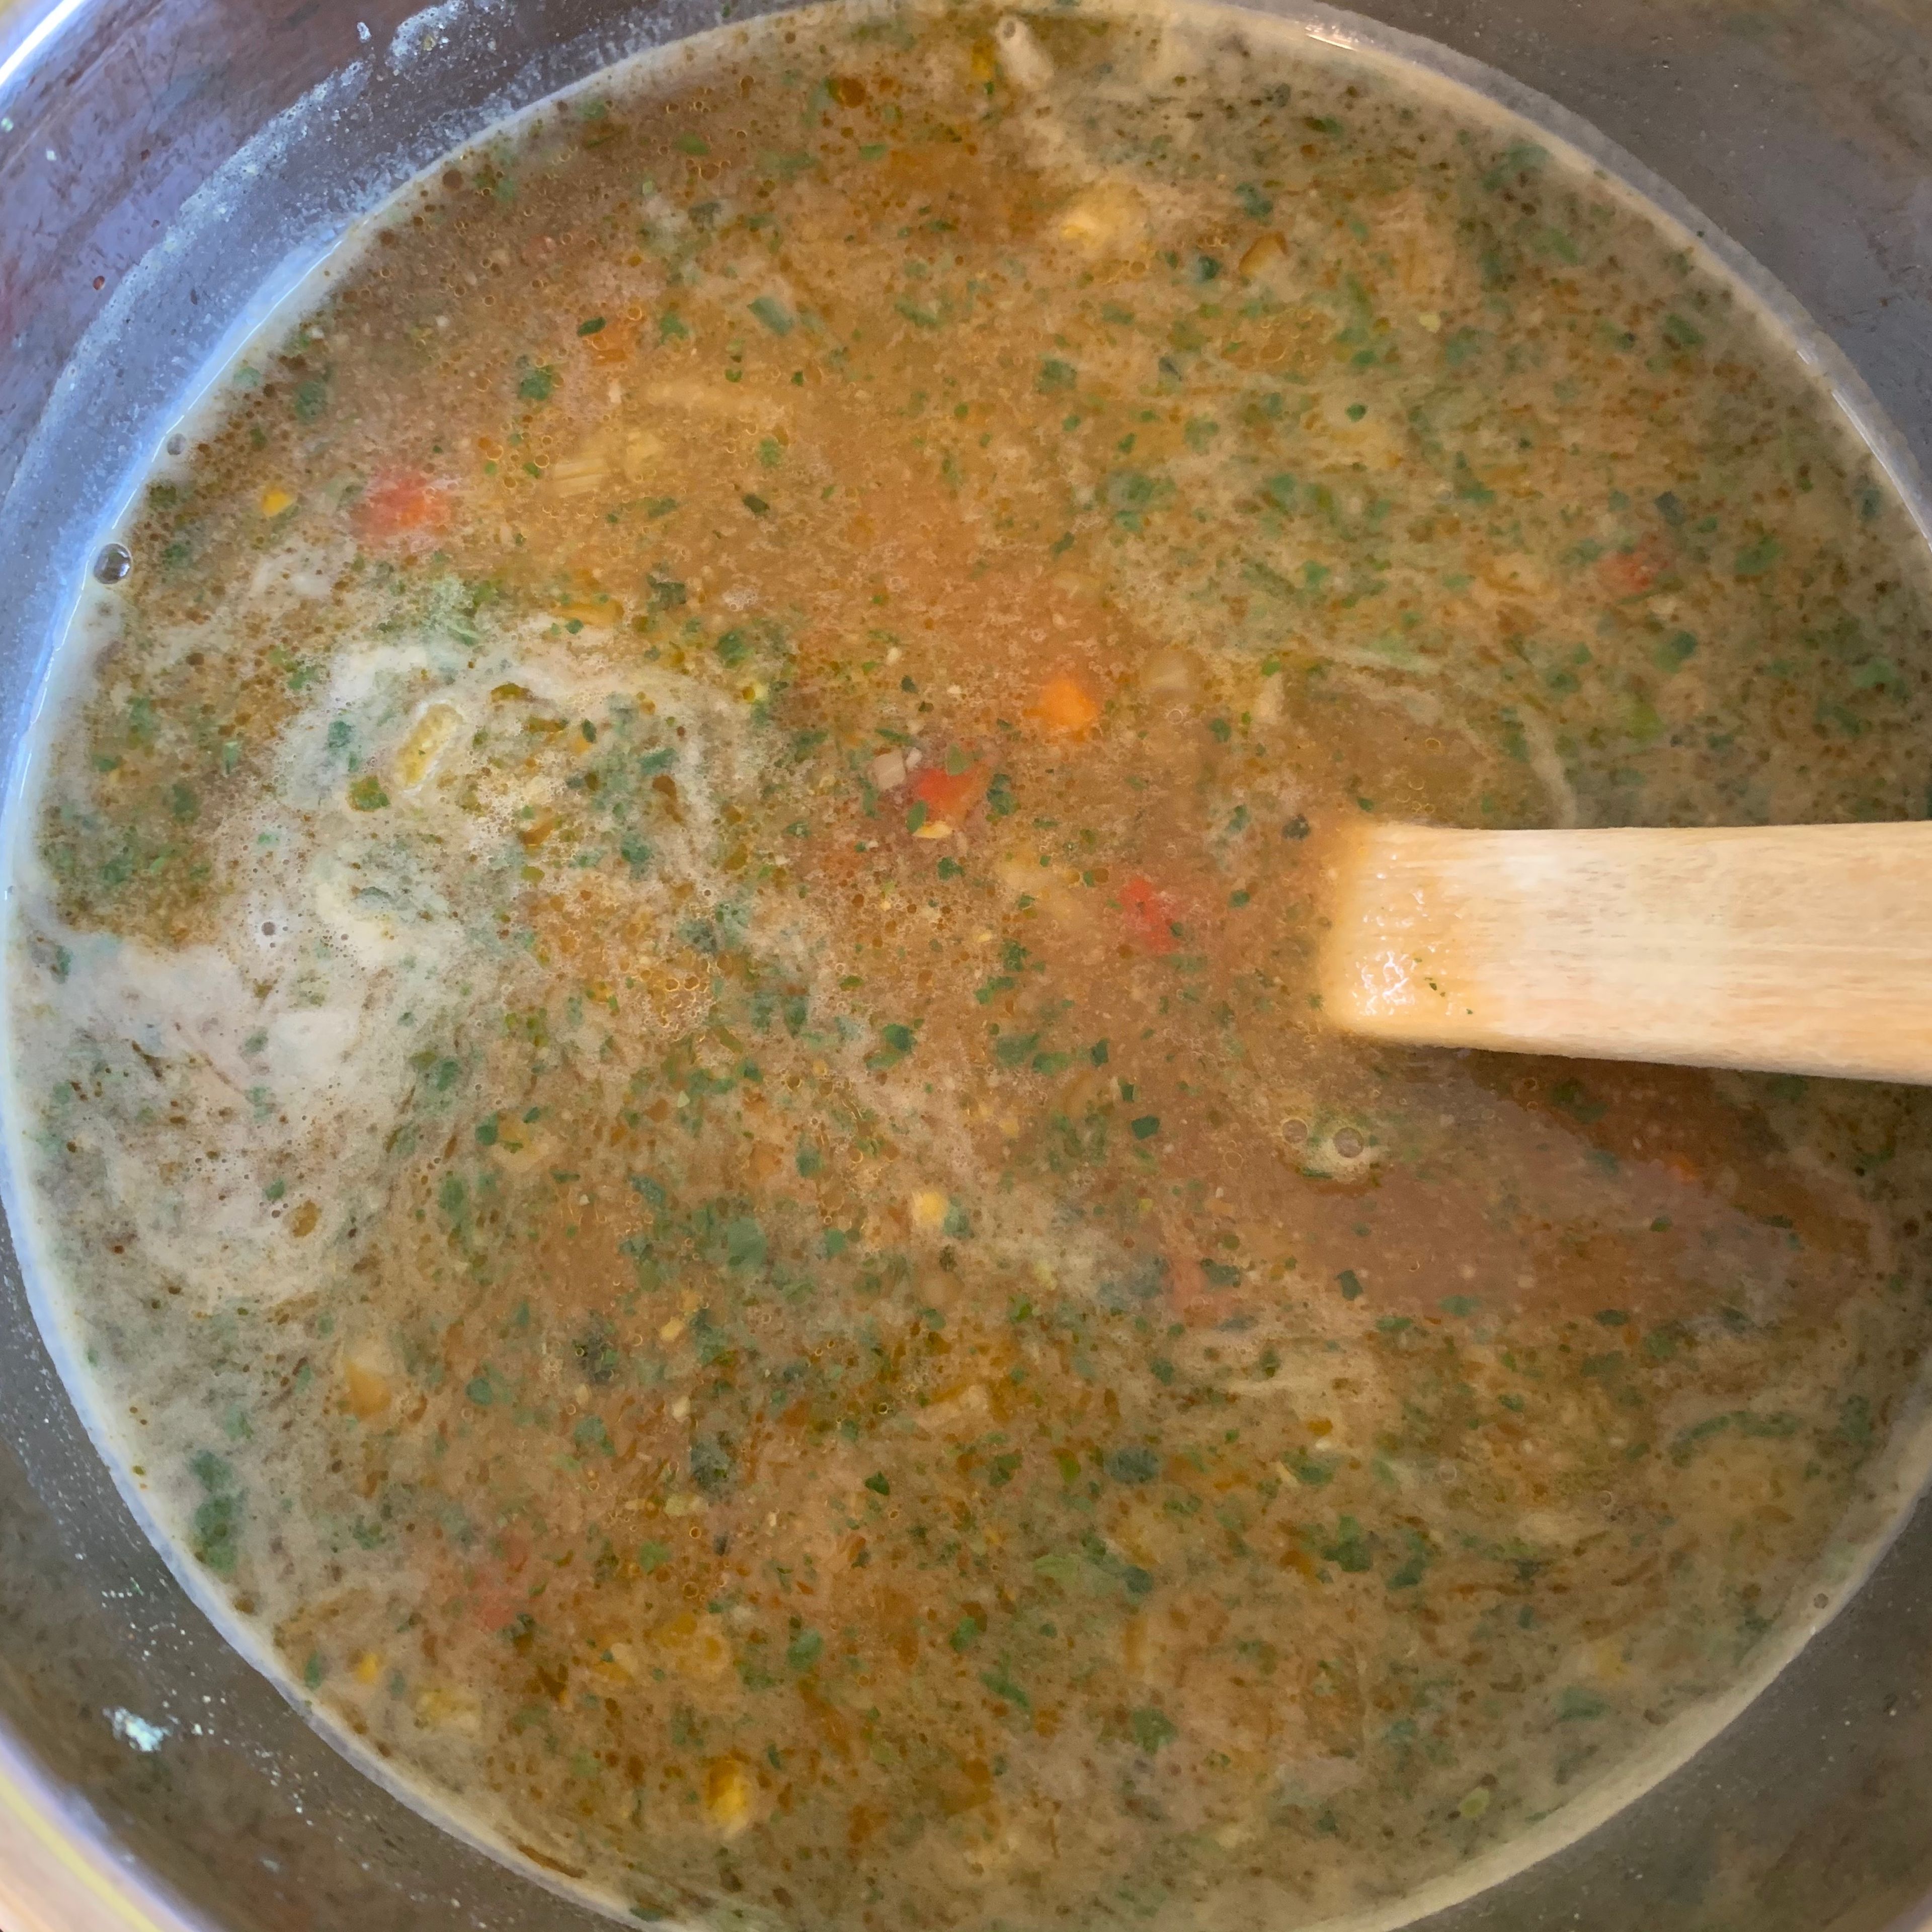 Die Gemüsebrühe in einen großen Topf geben. Den Ketchup unterrühren. Nebenbei die Eier in einer Schale zusammen mit 1 EL Wasser verquirlen. Die Glasnudeln in einem extra Topf nach Packungsanleitung zubereiten. Die Speisestärke in einer Tasse mit 3 EL Wasser verrühren und damit die Brühe eindicken. Aufkochen lassen. Die Lauchzwiebeln fein schneiden u. zusammen mit dem Gemüse aus der Pfanne in die Suppe geben. Die verquirlten Eier langsam unter Rühren einlaufen lassen, so dass sich Fäden bilden.